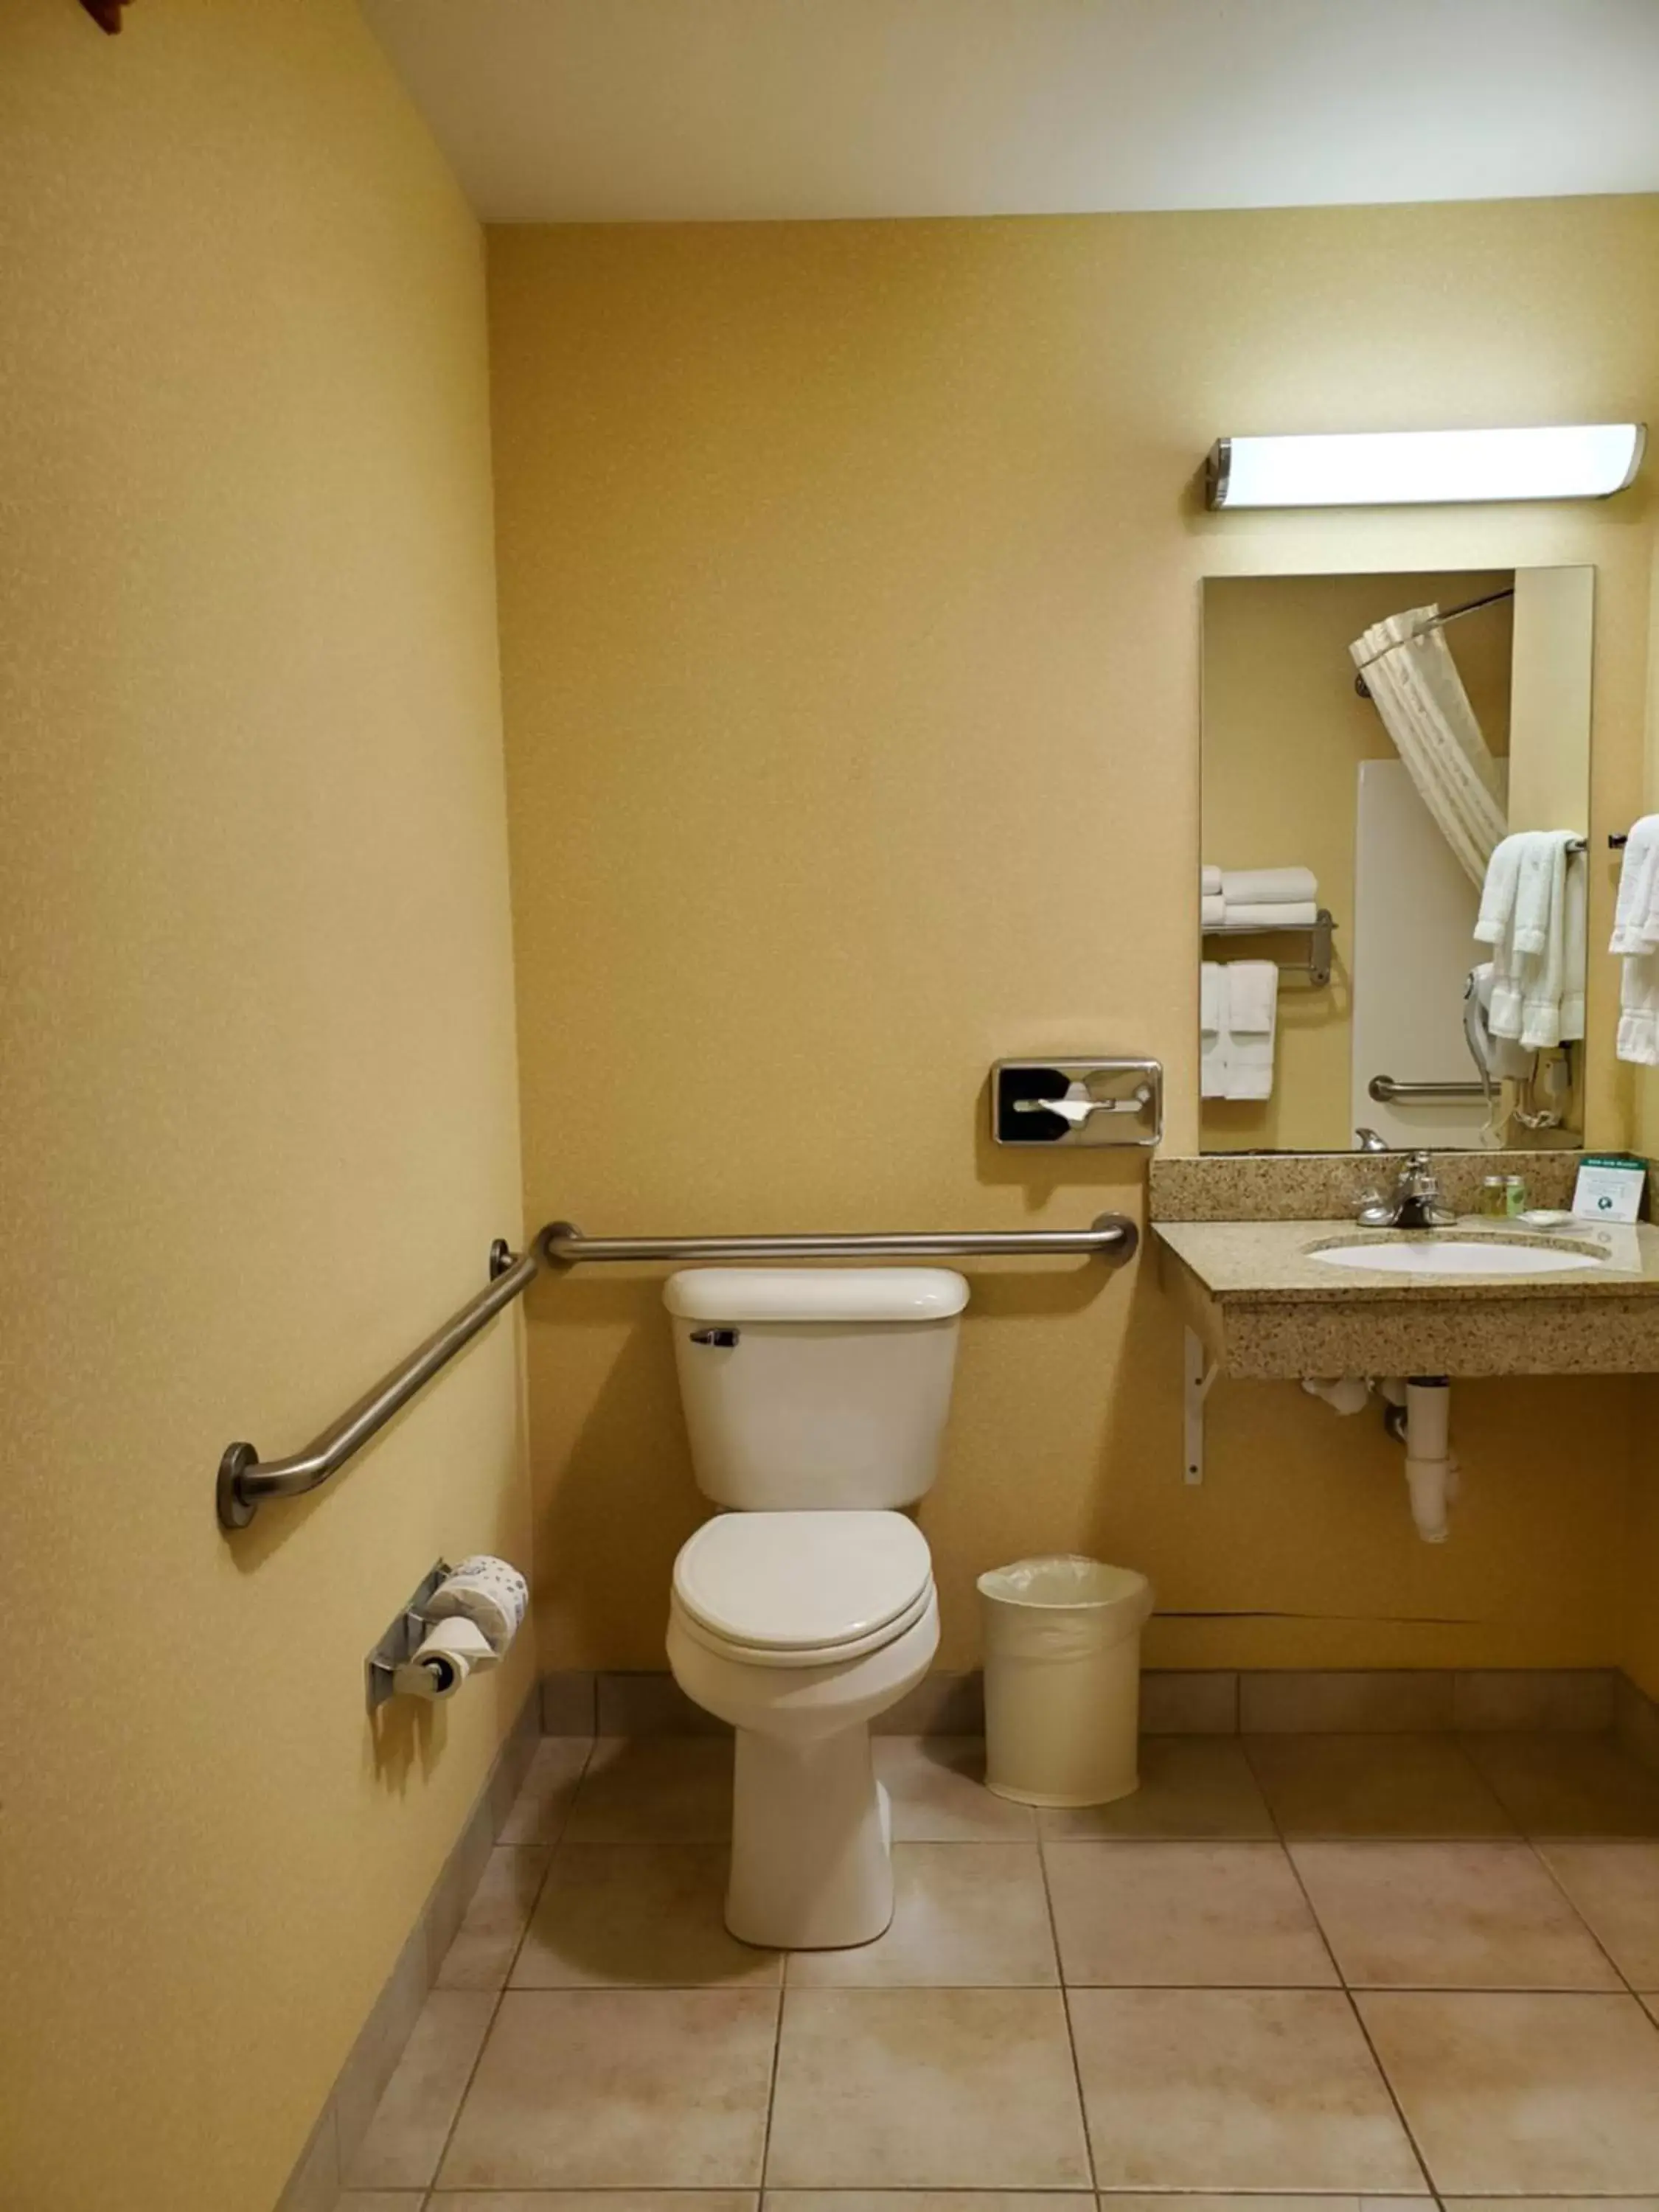 Toilet, Bathroom in Boarders Inn & Suites by Cobblestone Hotels - Shawano